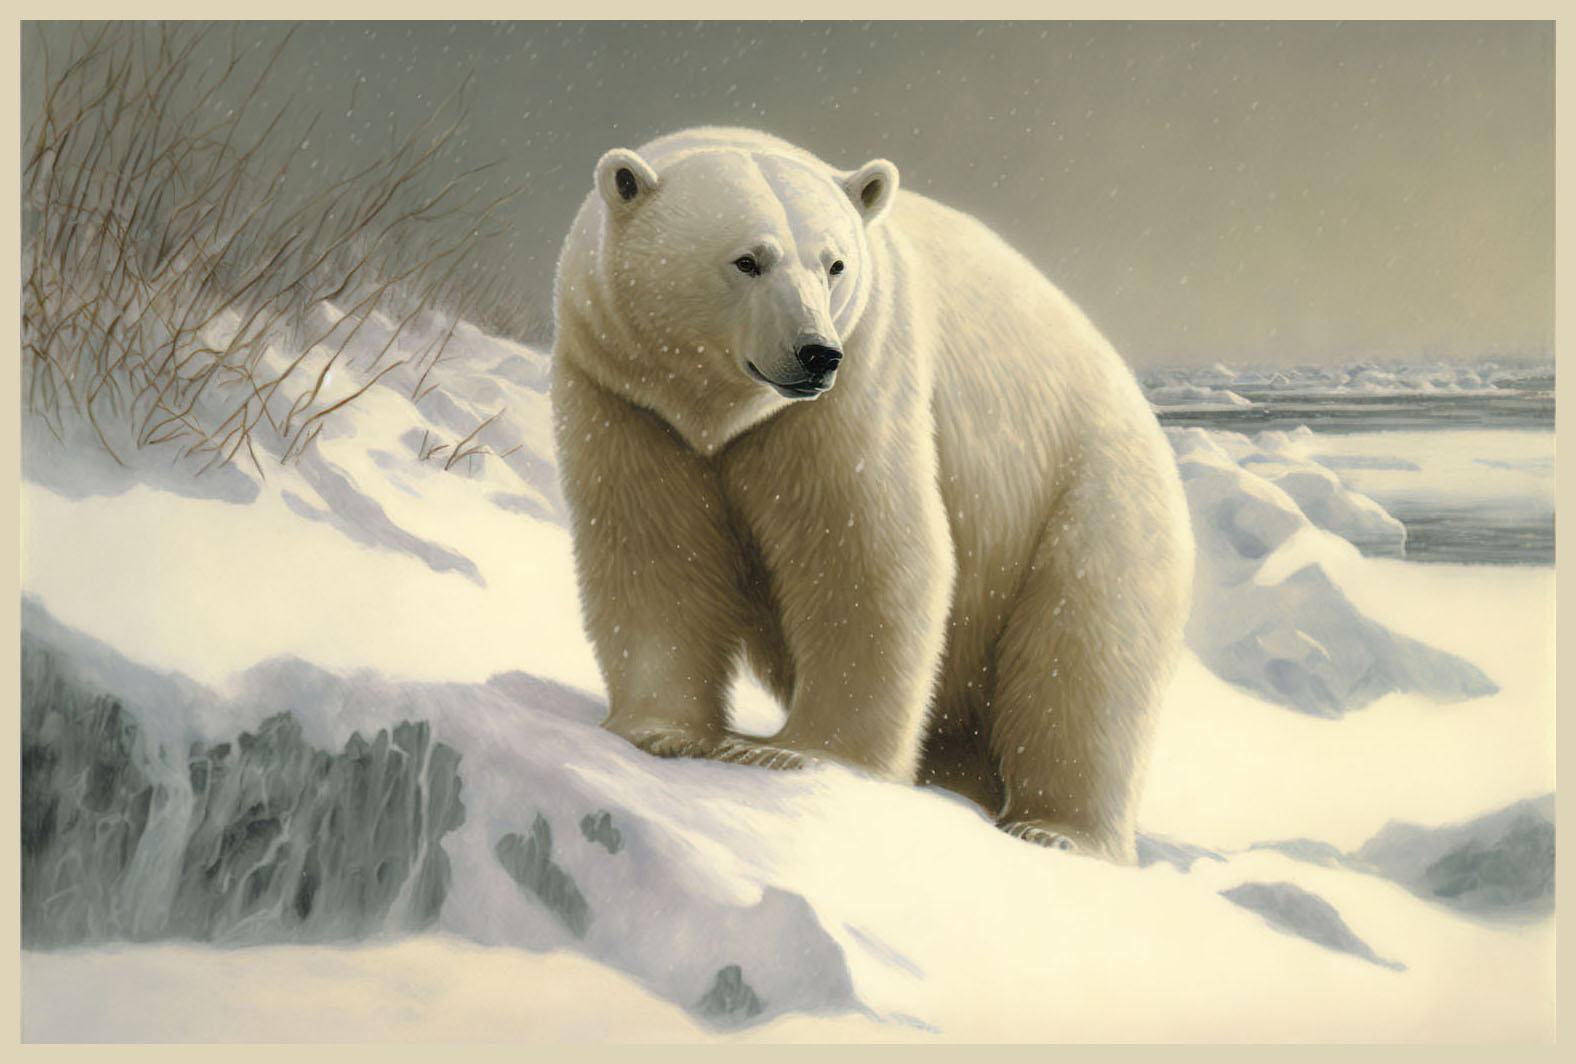 Snowy Polar Bear Image